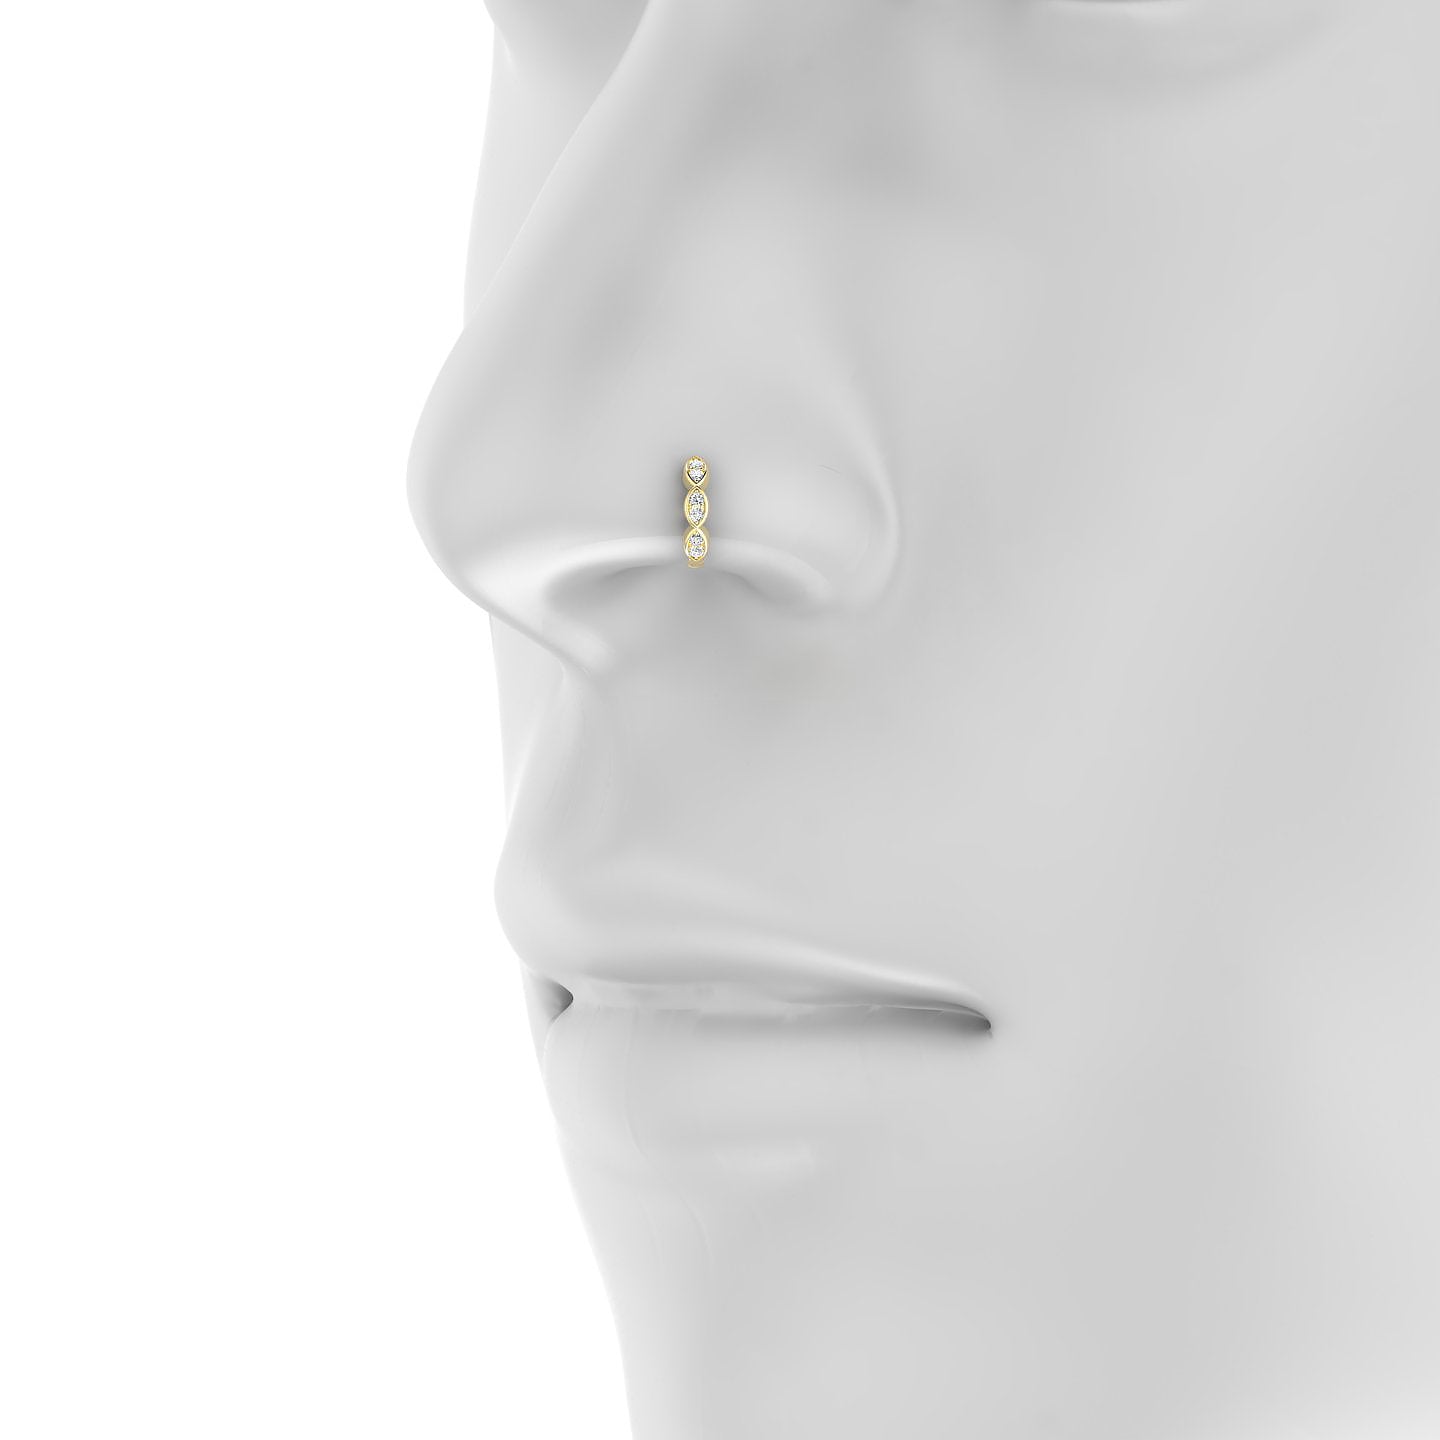 Hathor | 18k Yellow Gold 6.5 mm Diamond Nose Ring Piercing